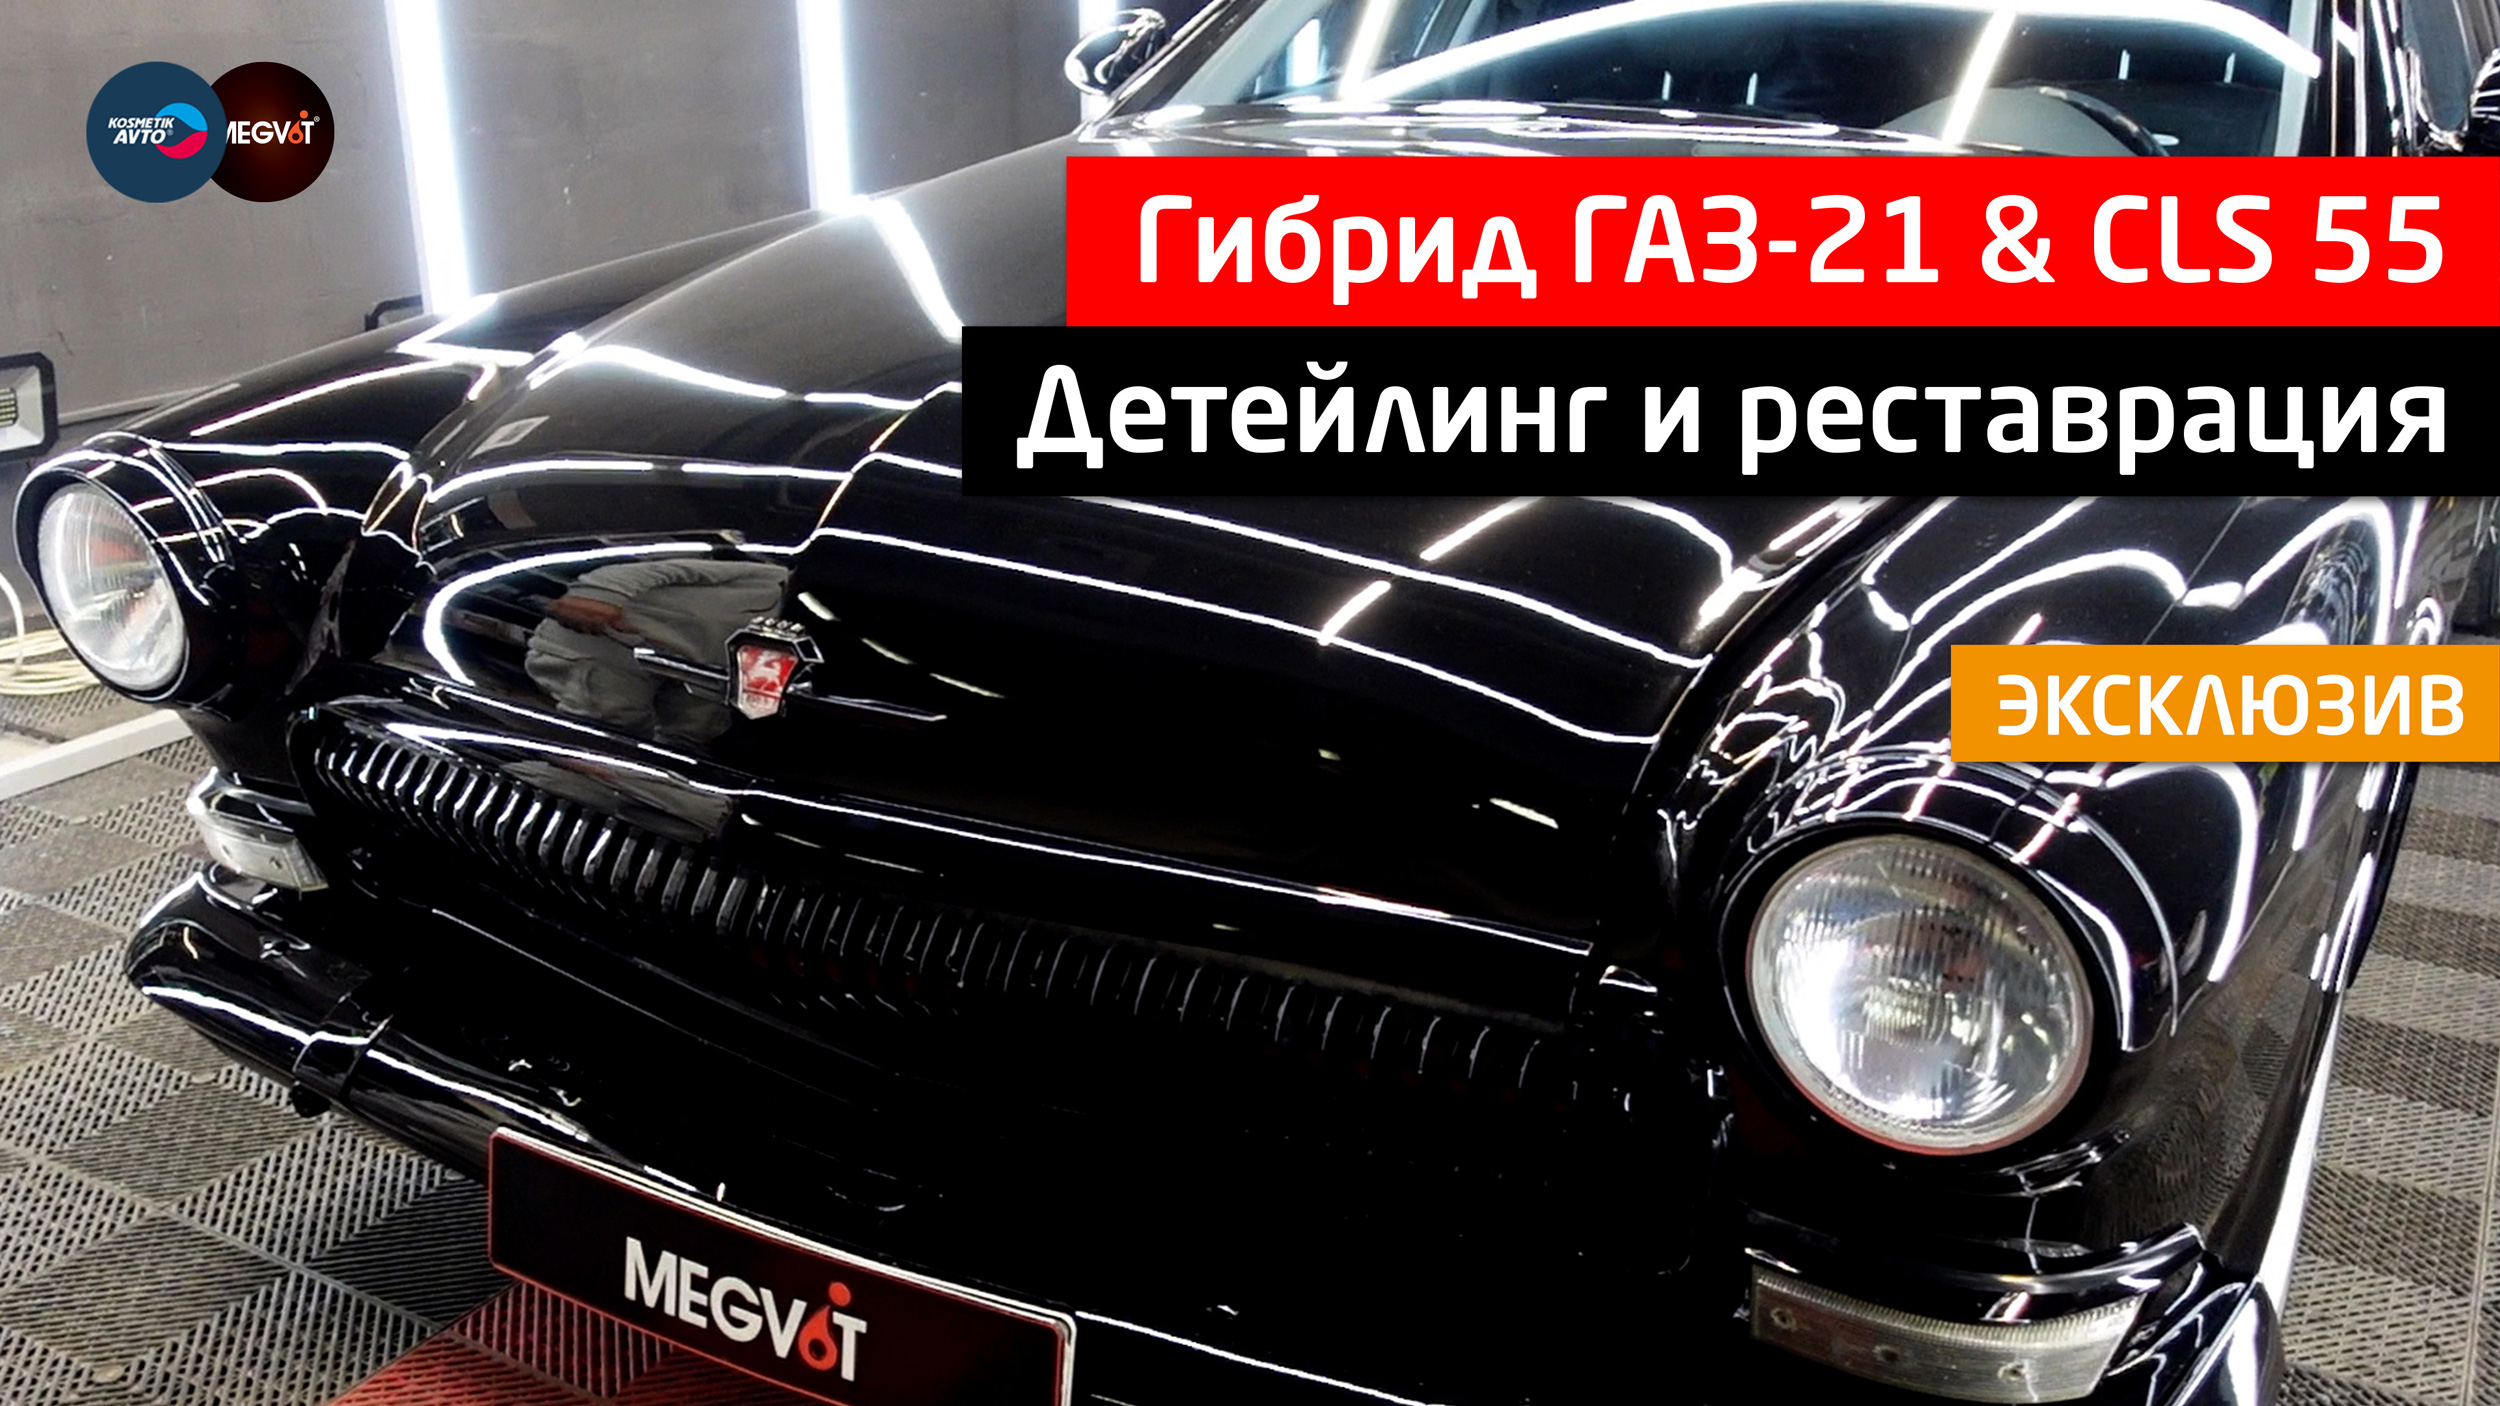 Детейлинг гибрида Волги ГАЗ-21 и Mercedes-Benz CLS 55 ► Эксклюзив!